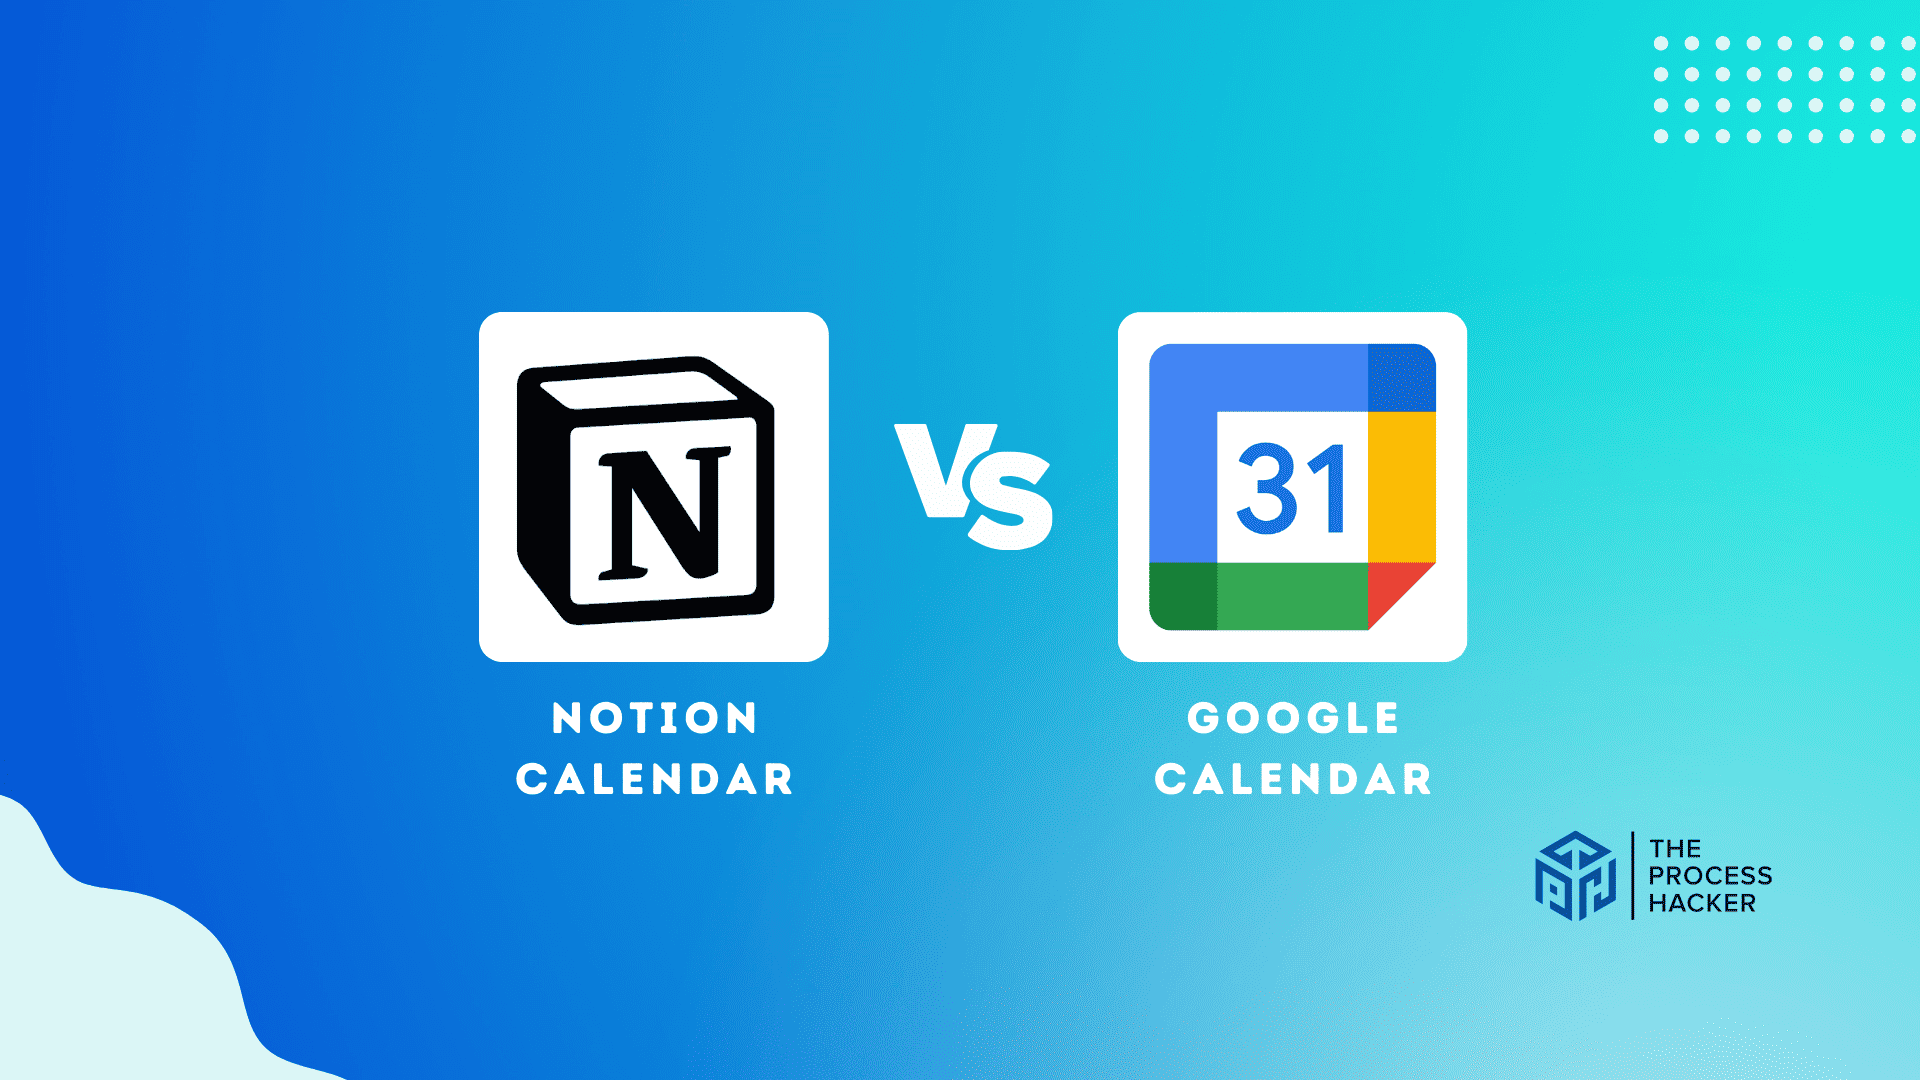 Notion Calendar vs Google Calendar: Which Calendar App is Better? The